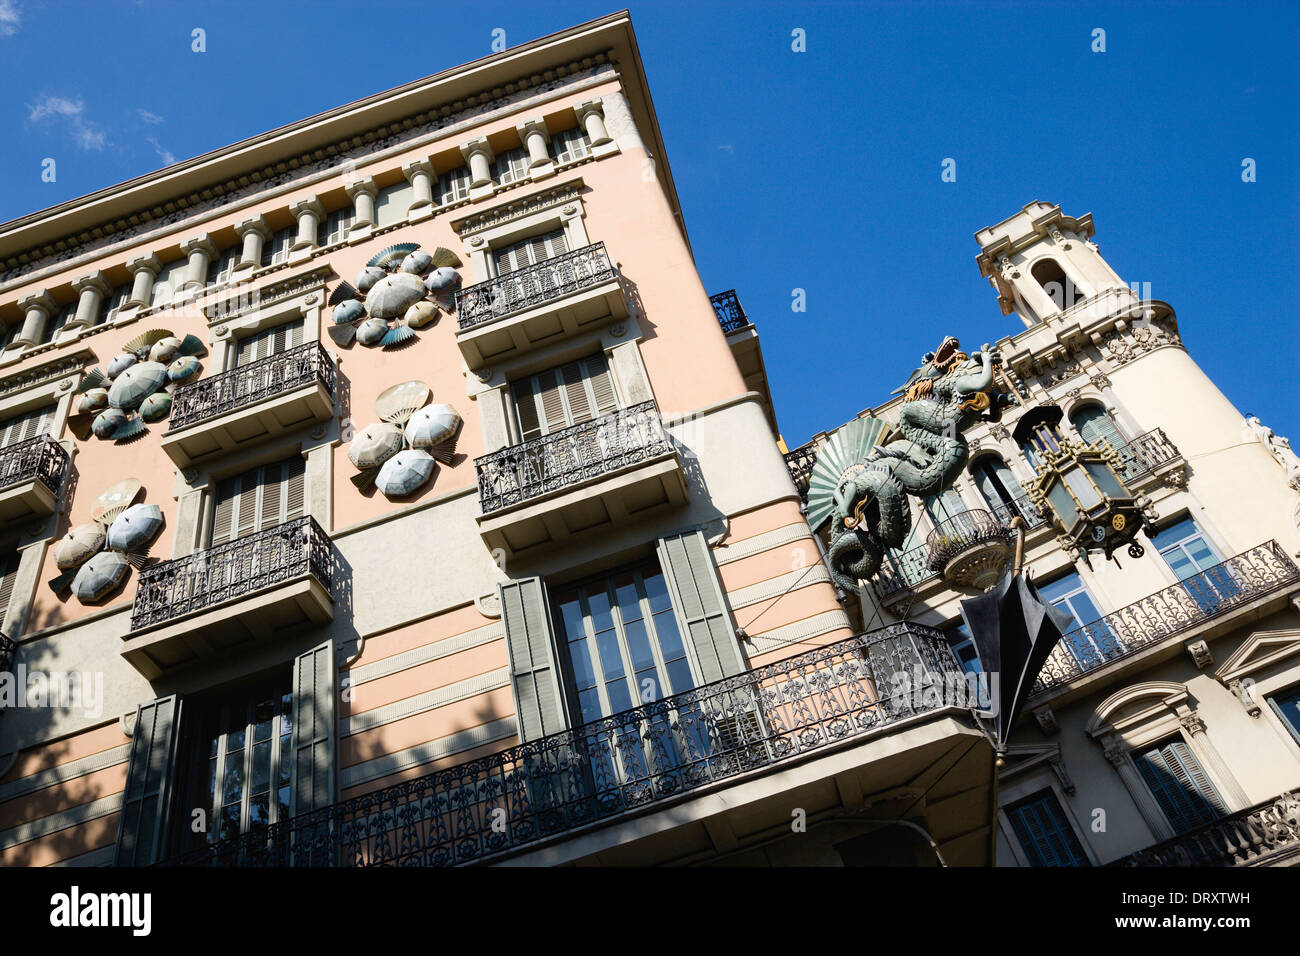 In Spagna, in Catalogna, Barcellona, La Rambla, Plaça de la Boqueria, Drago Modernista su ex ombrello shop. Foto Stock